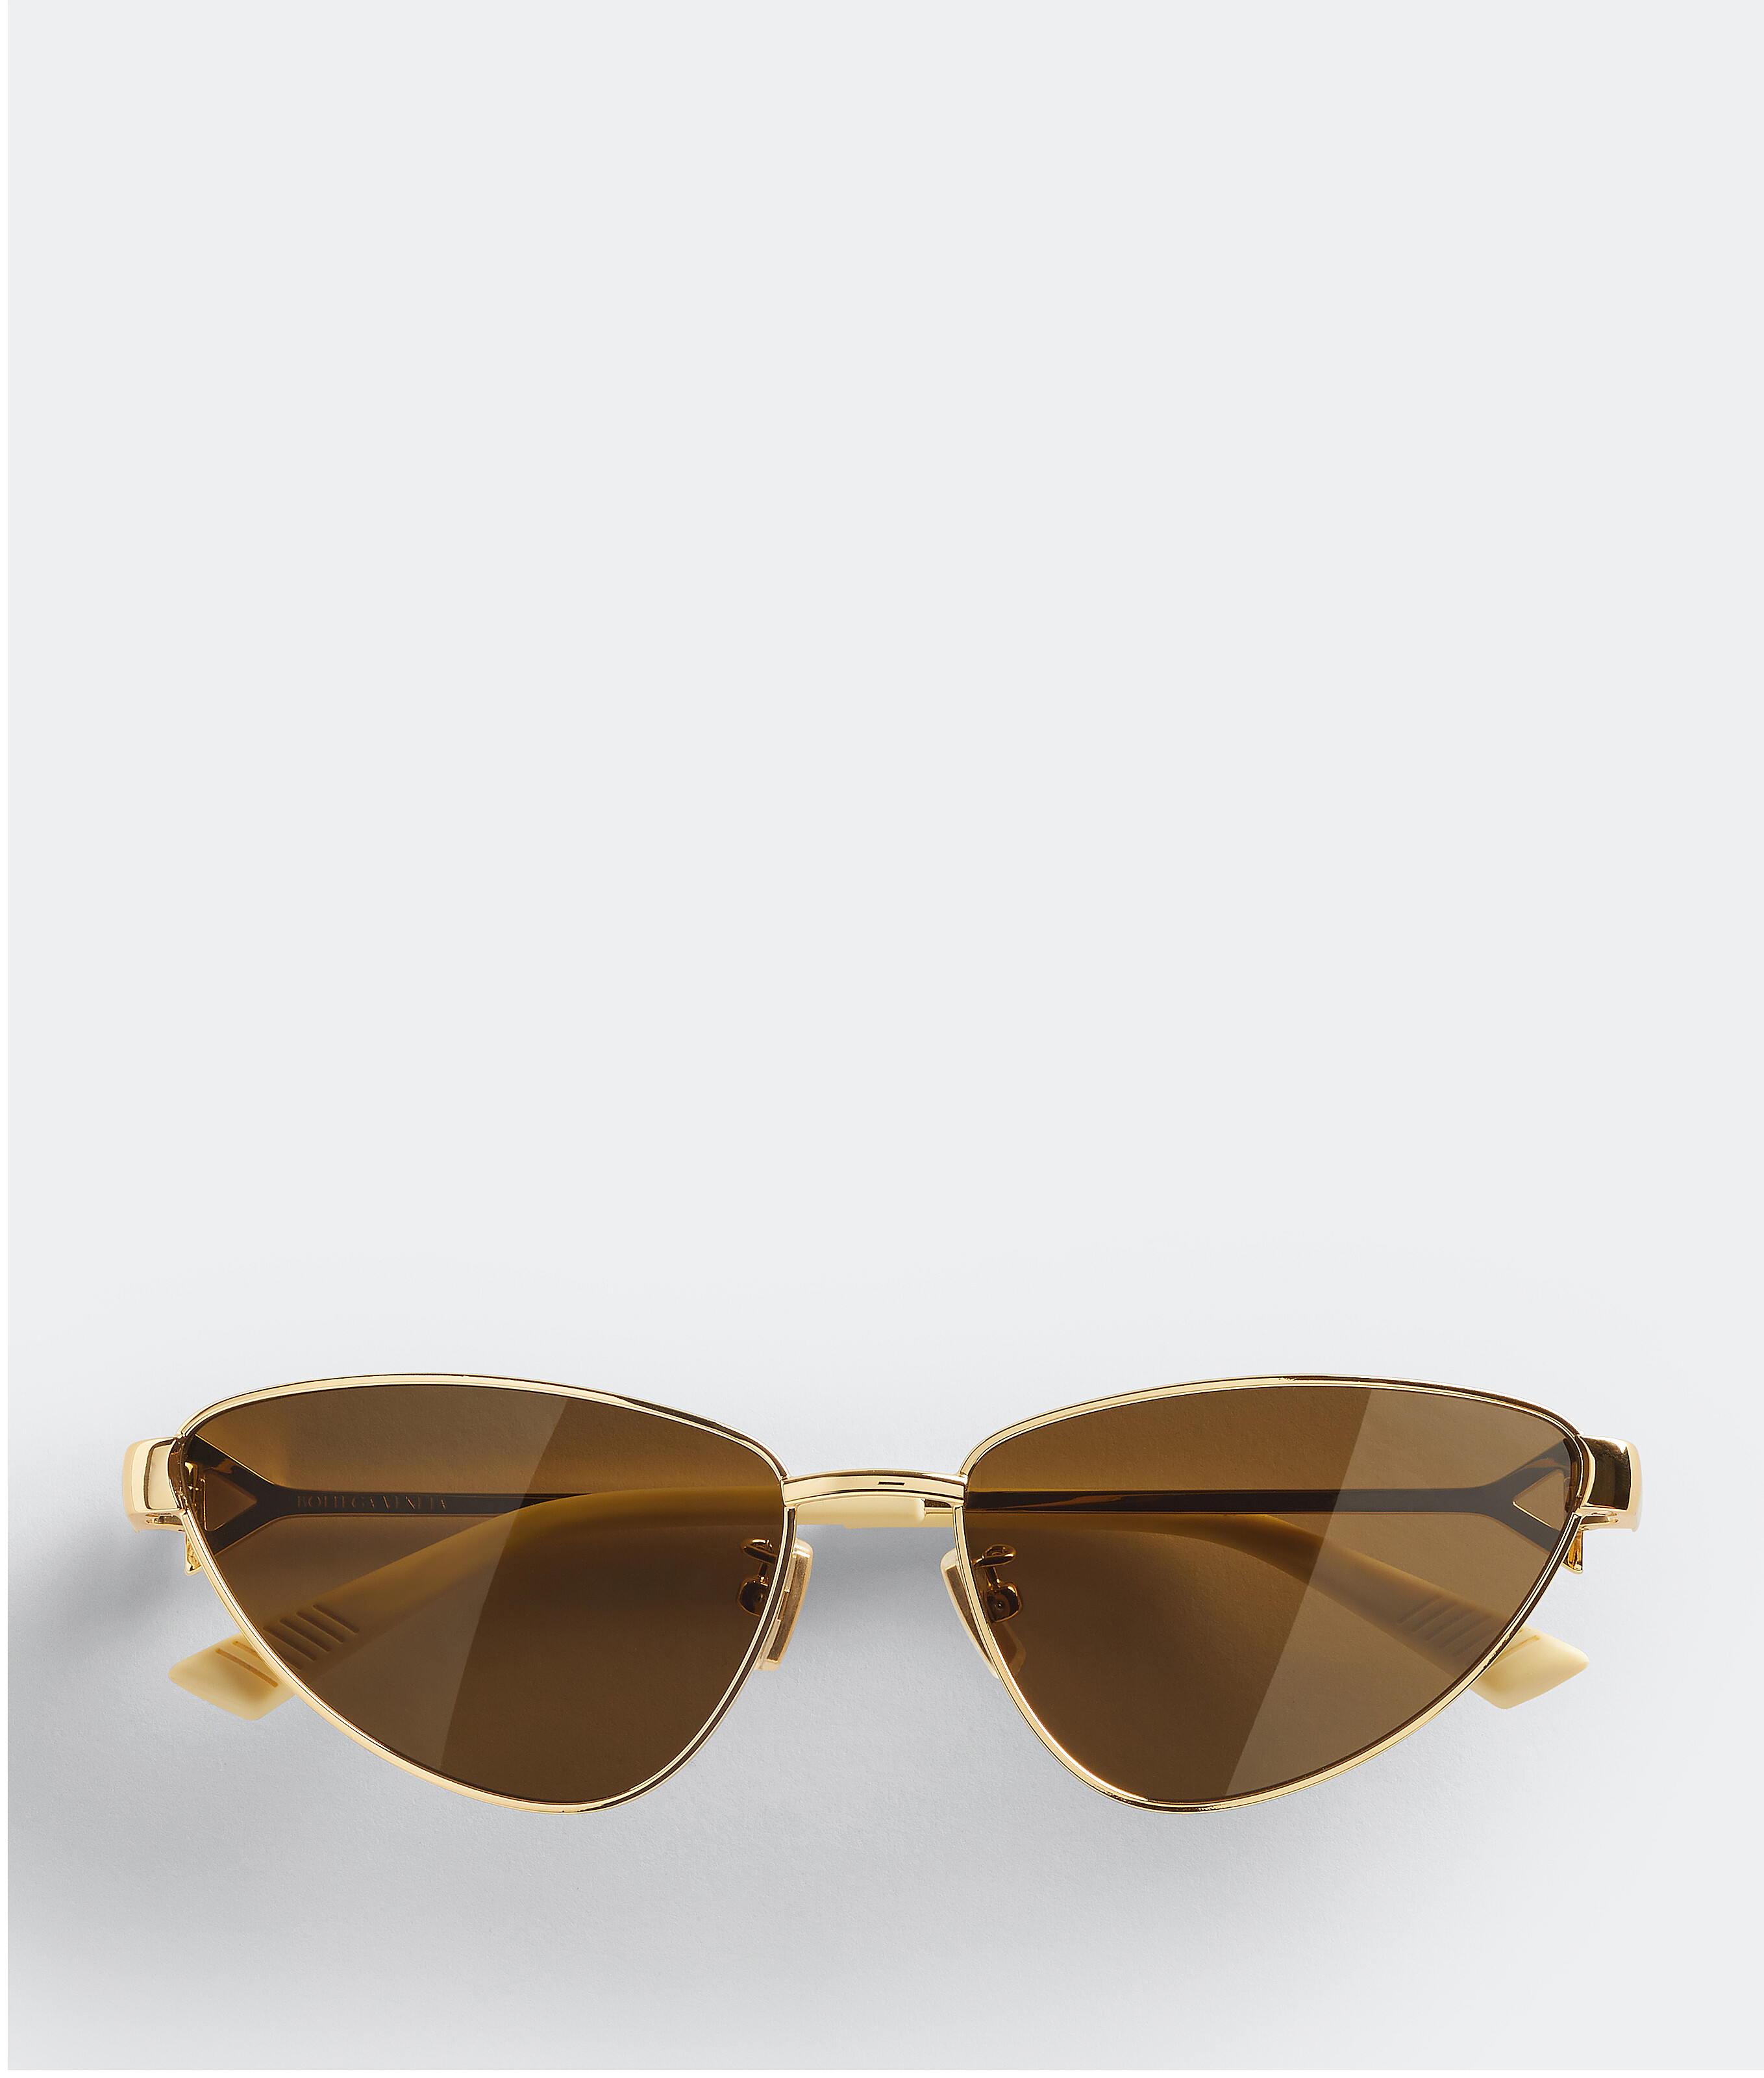 Bottega Veneta Turn Cat-eye-sonnenbrille In Gold